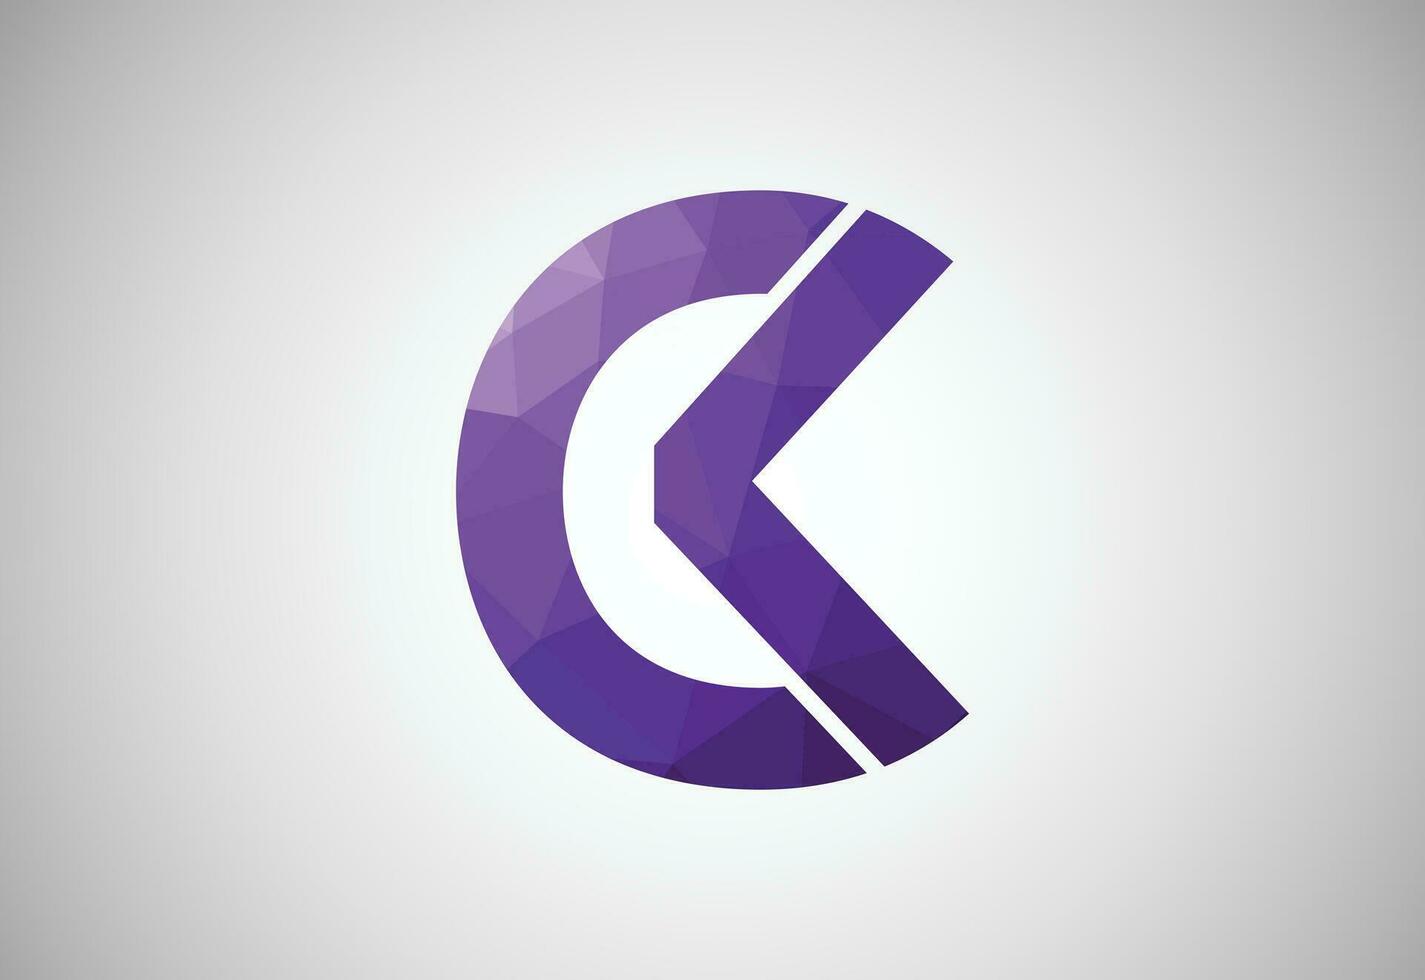 Basso poli e alfabeto iniziale ck lettera logo disegno, vettore design modello